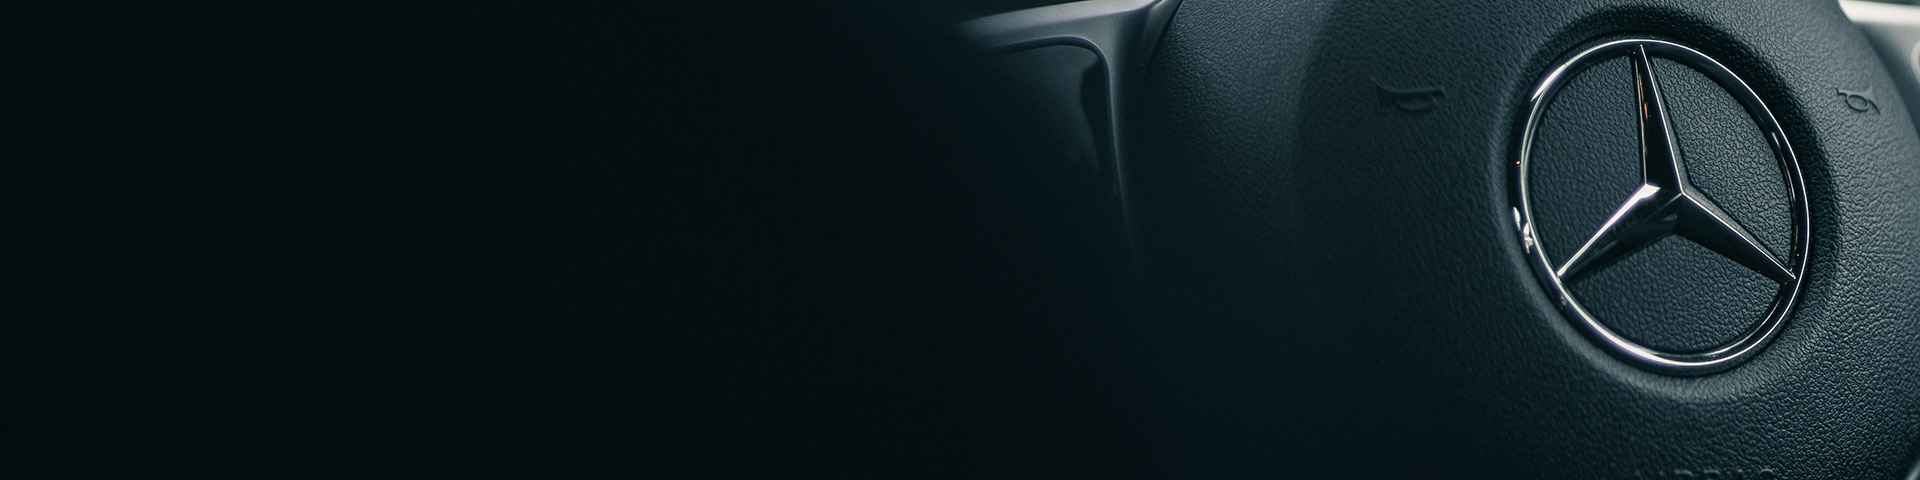 Mercedes-Benz Cla Coupe Backdrop